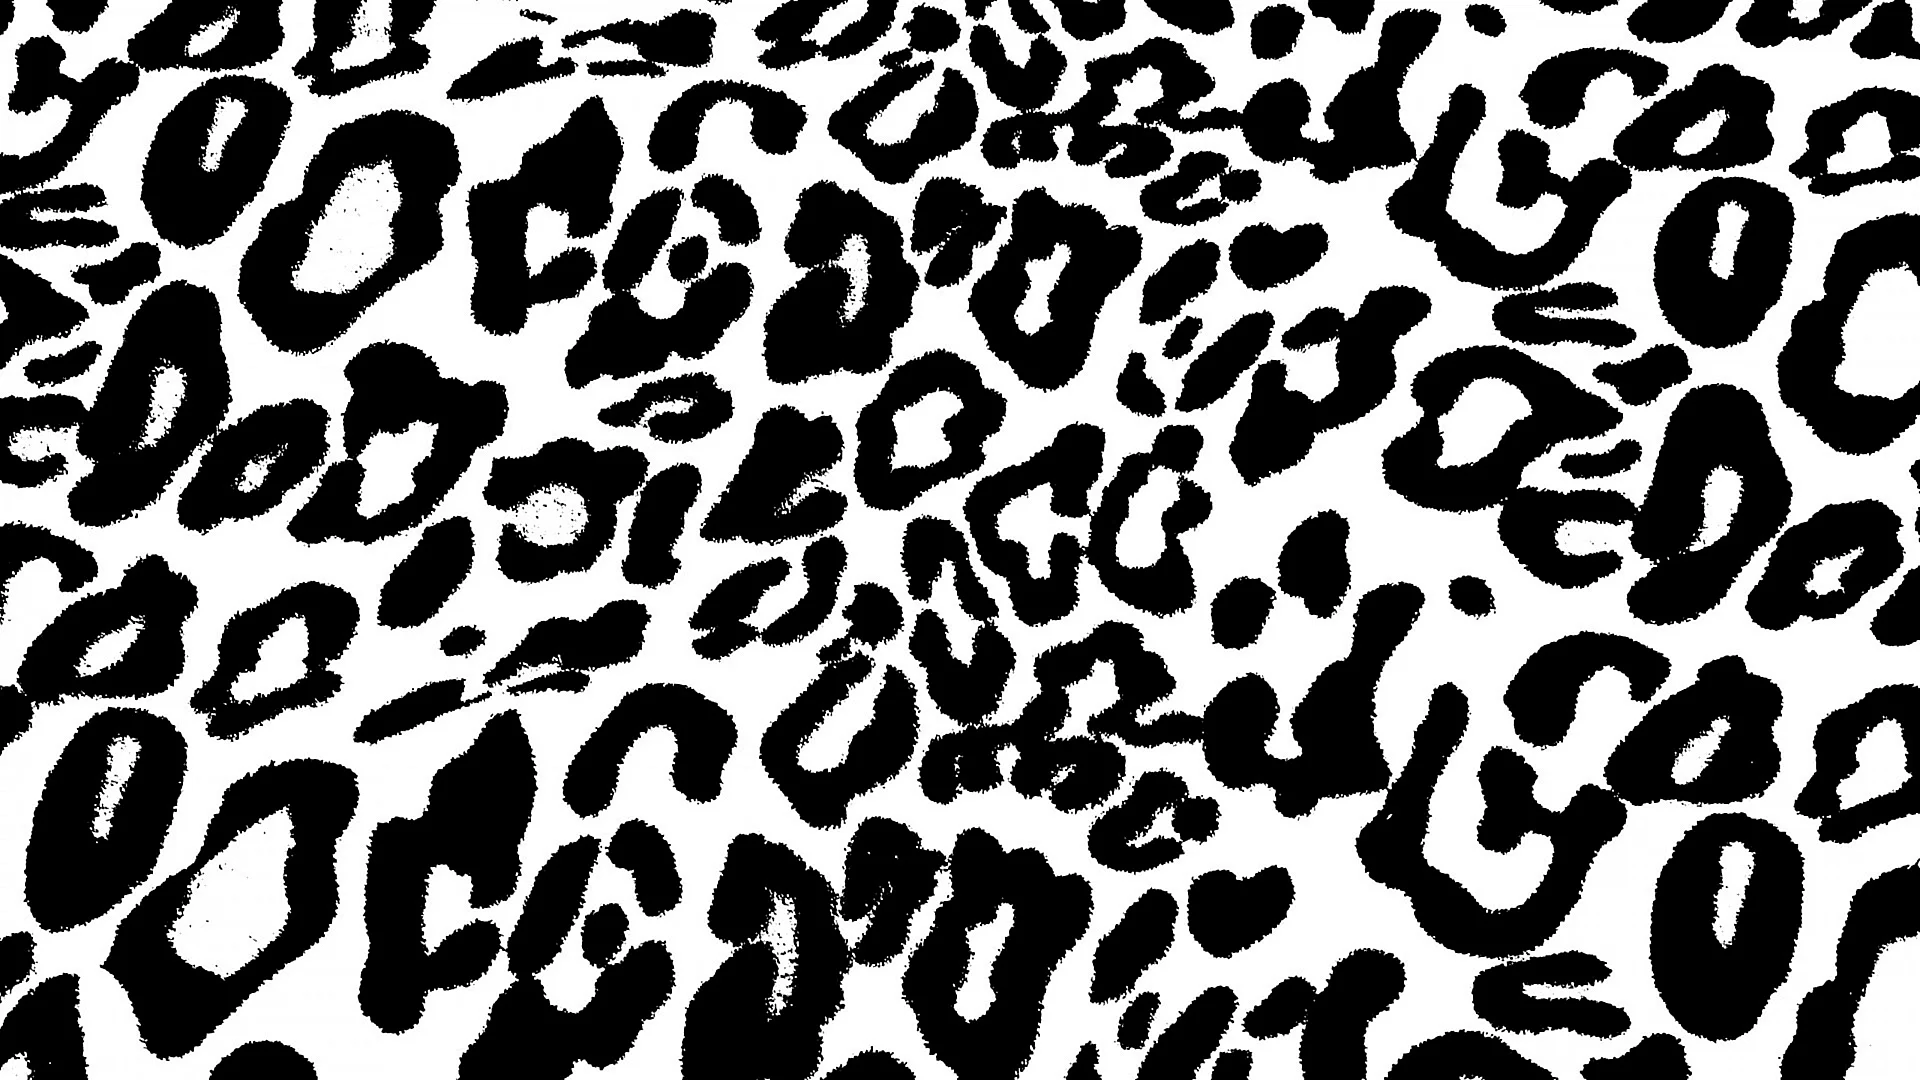 Leopard pattern Wallpaper